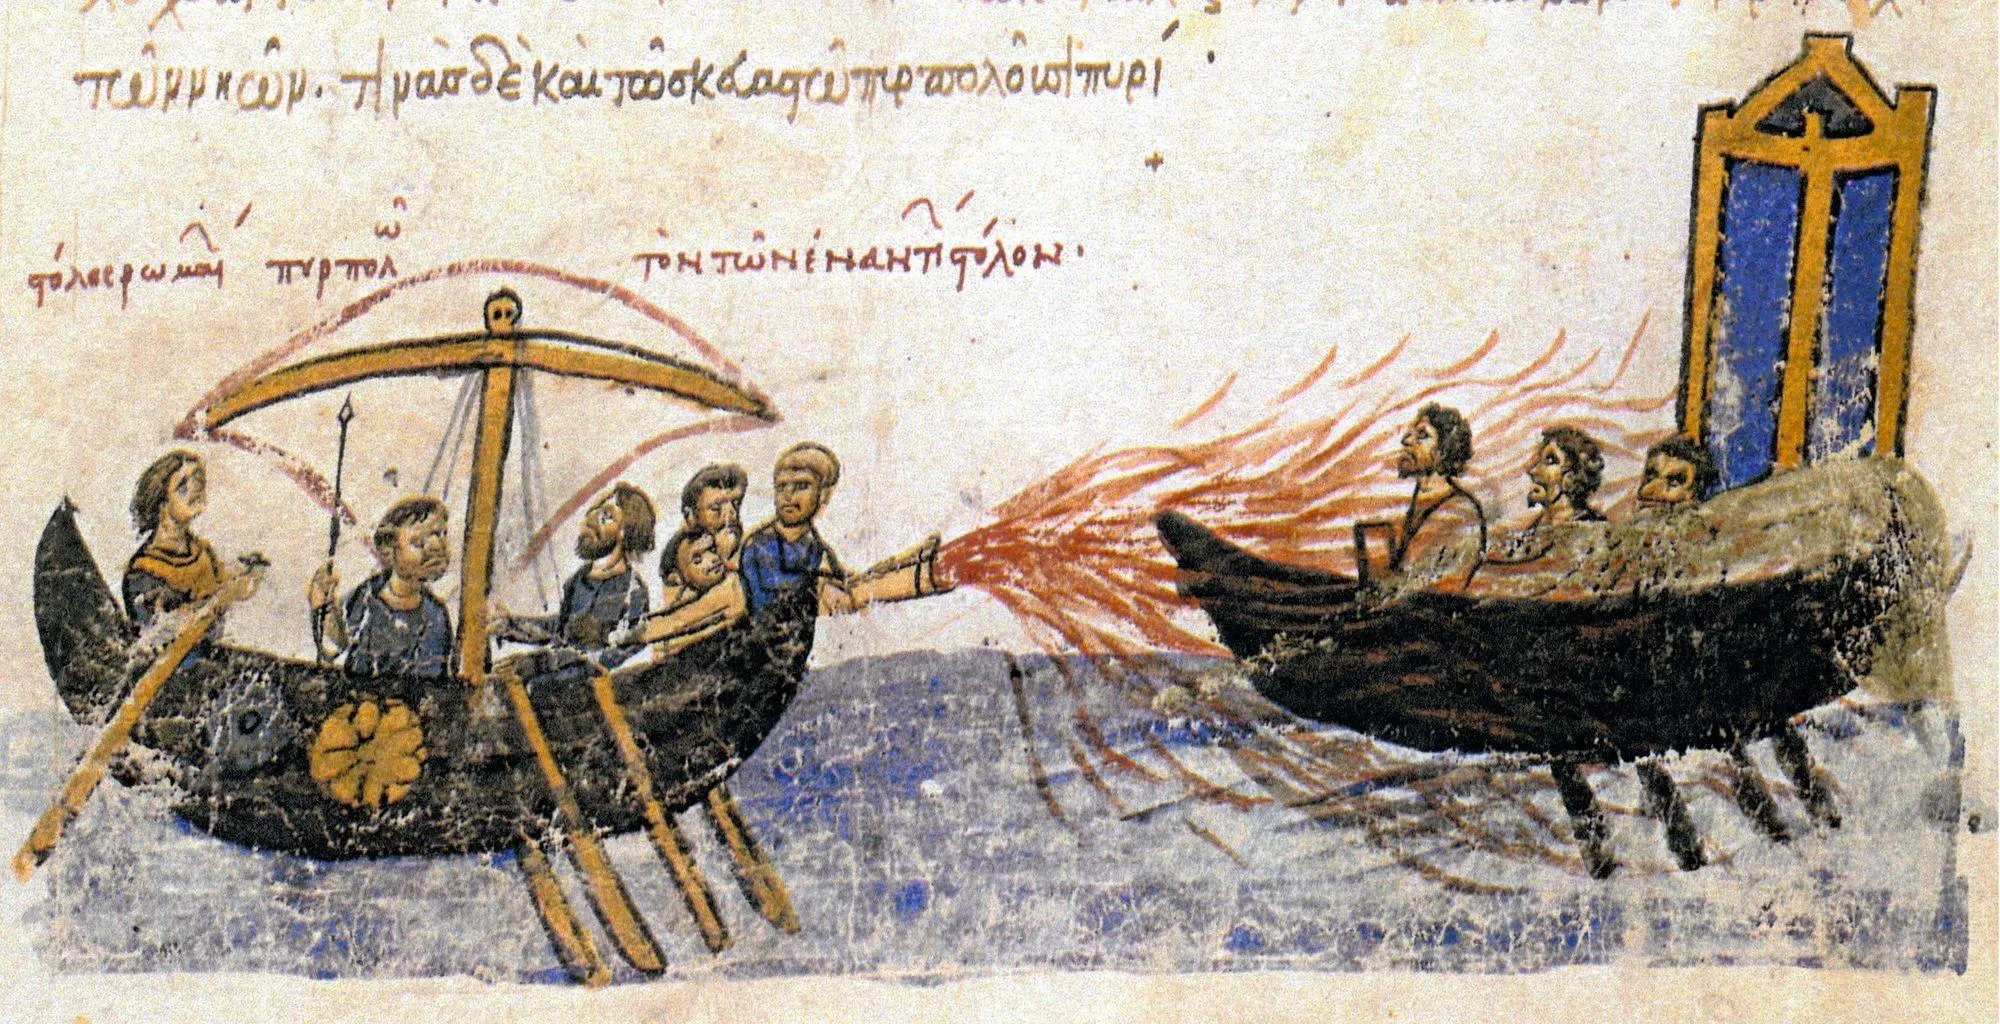 Navire byzantin faisant usage du feu grégeois (un mélange infl ammable), enluminure dans un manuscrit de la Chronique de Jean Skylitzès, v. 1150, BNE, Madrid